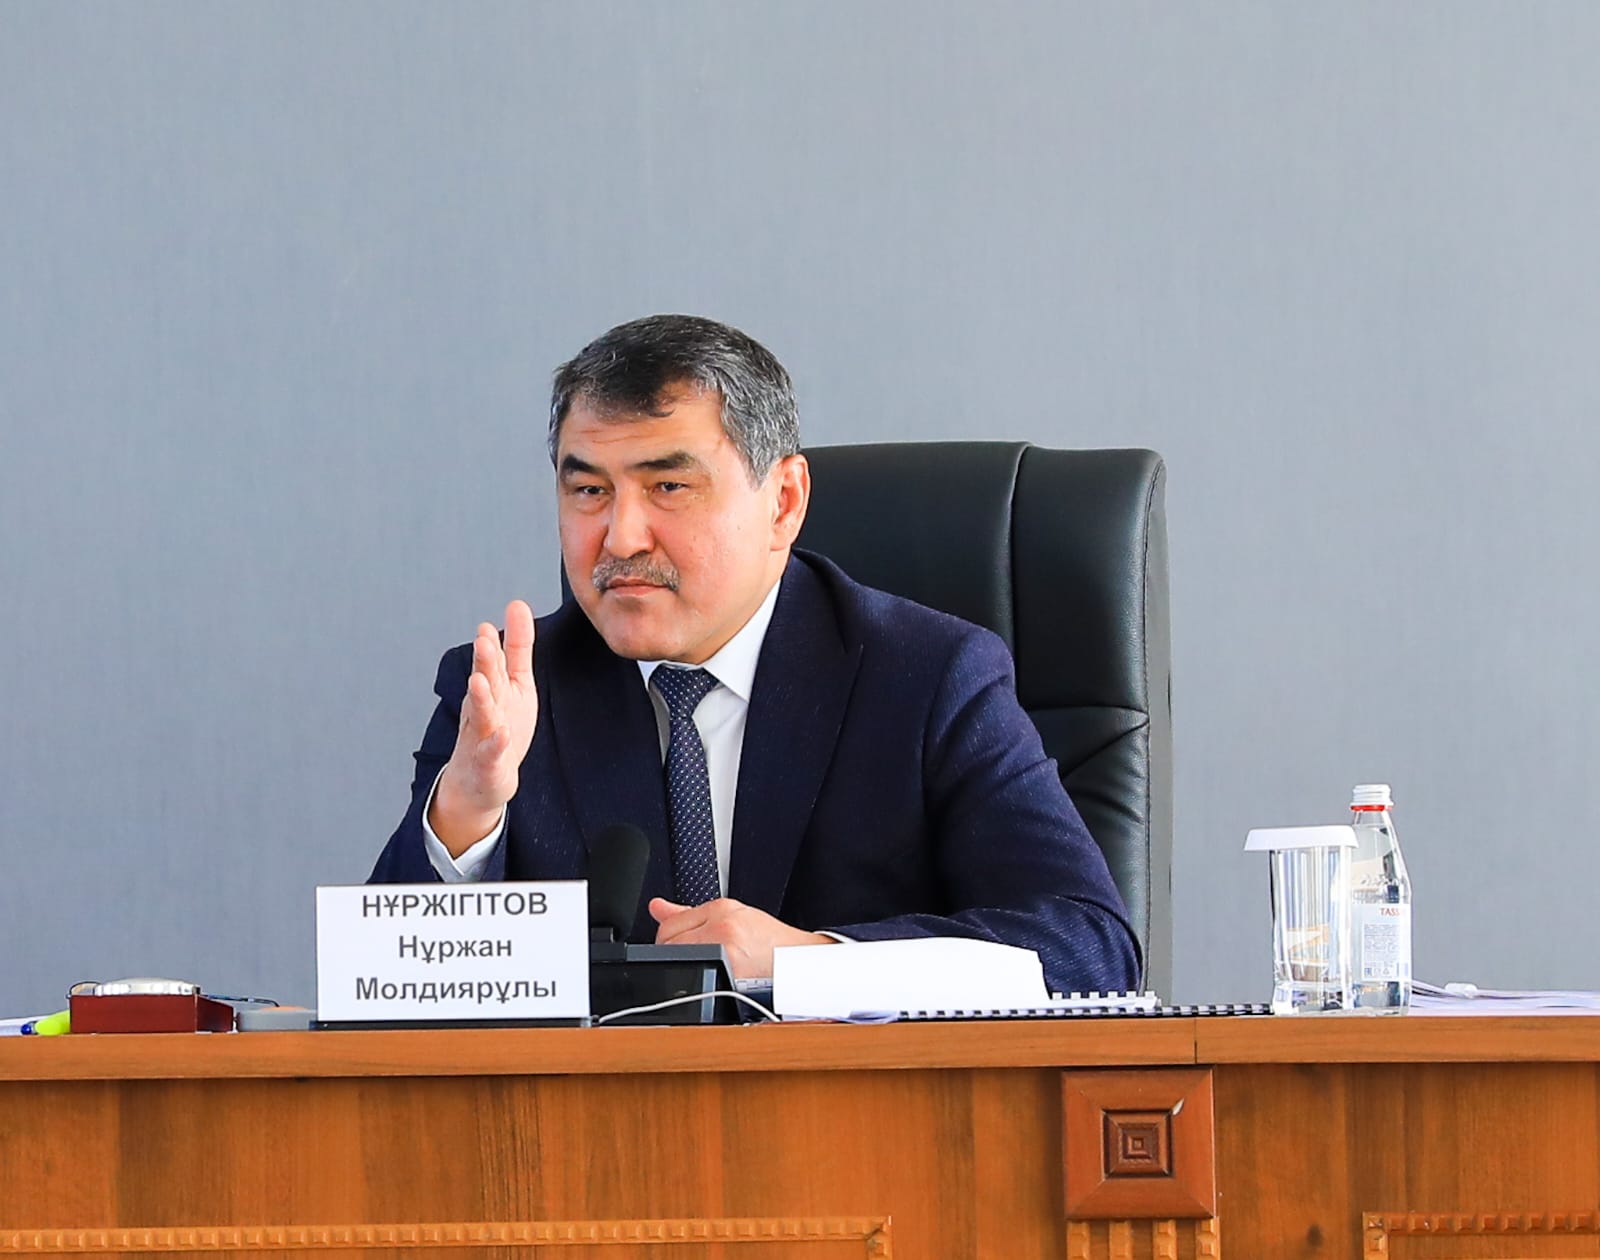 Нуржан Нуржигитов: При составлении плана необходимо учитывать потребности граждан и потенциал района